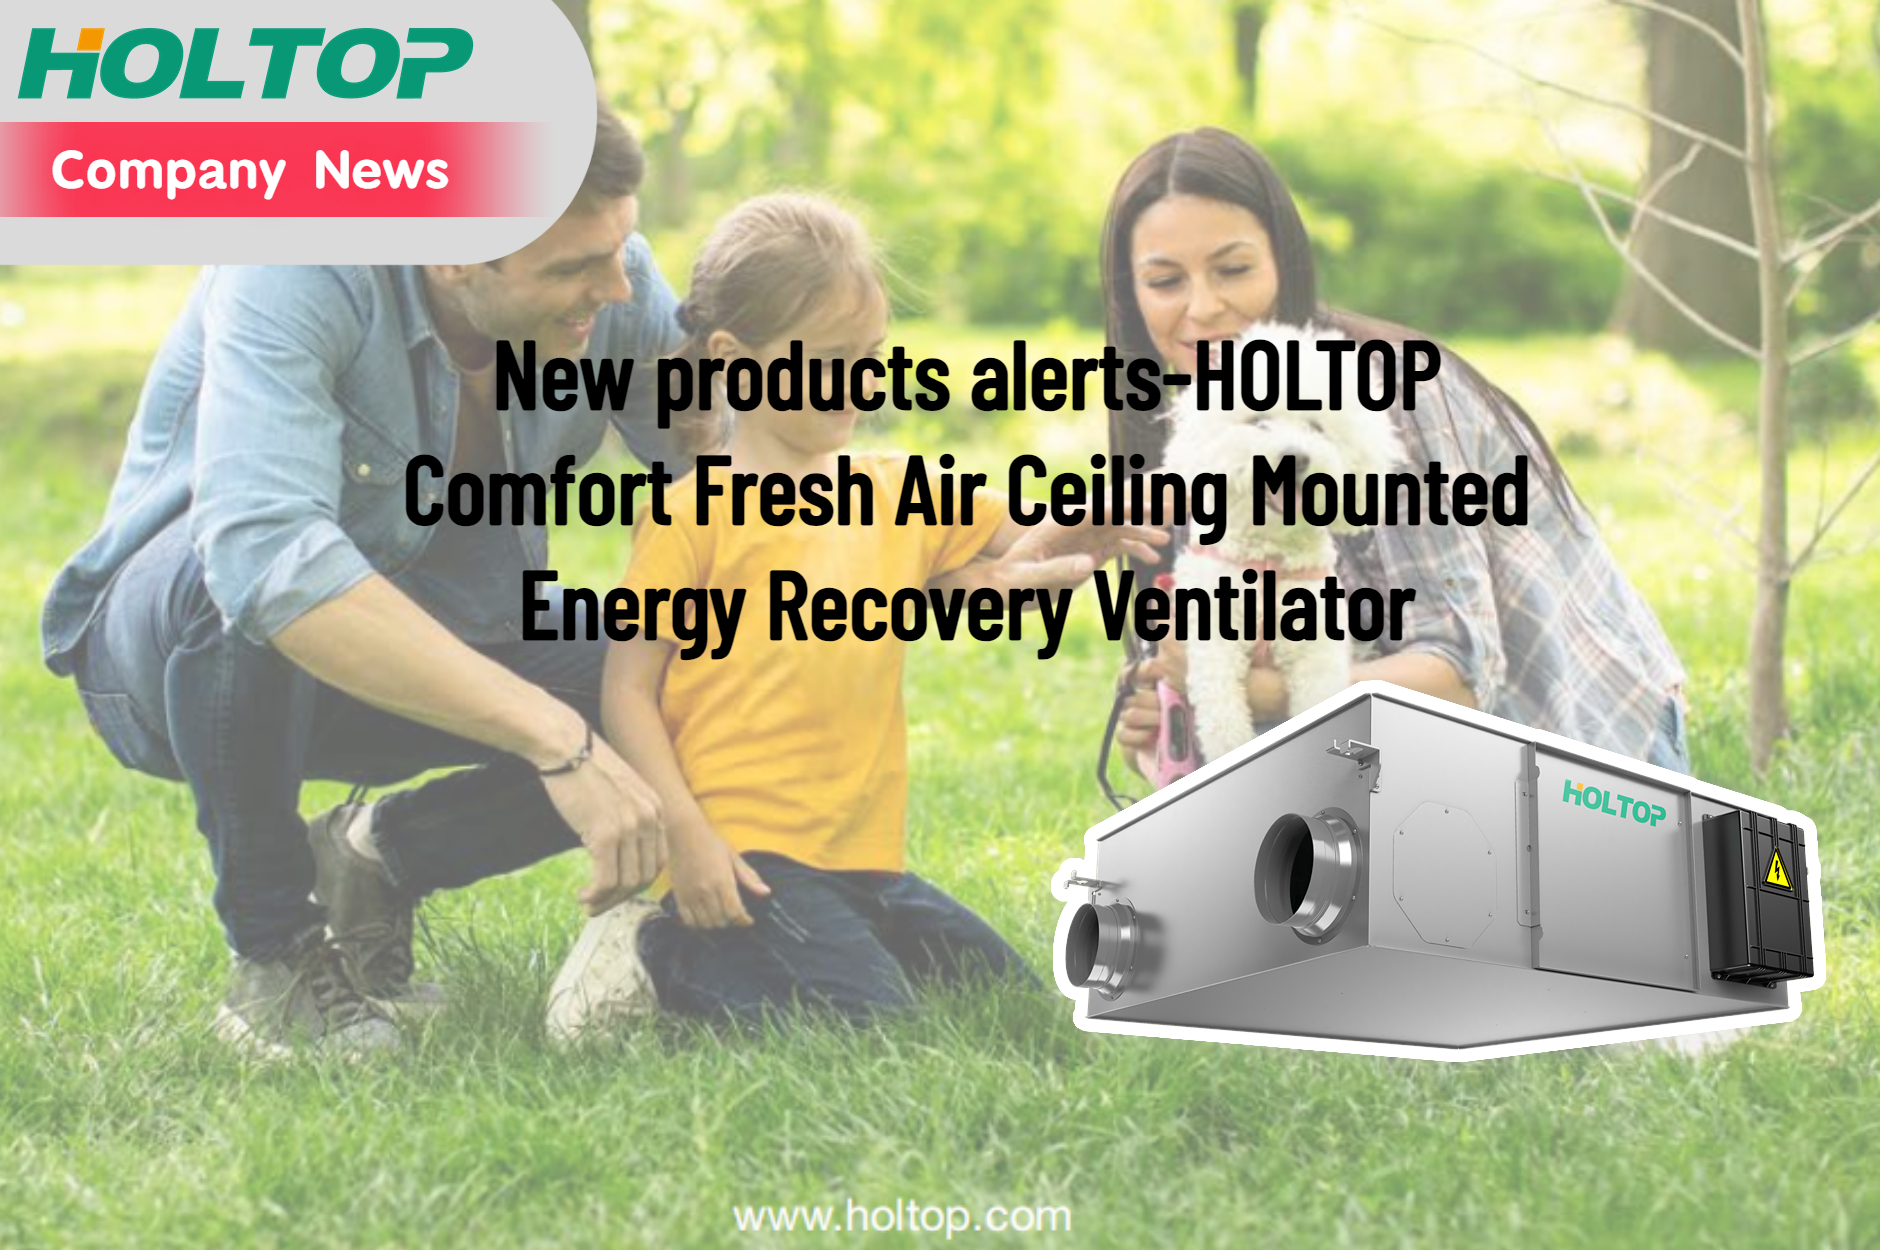 Avvisi di nuovi prodotti-Ventilatore HOLTOP Comfort Fresh Air a soffitto a recupero di energia